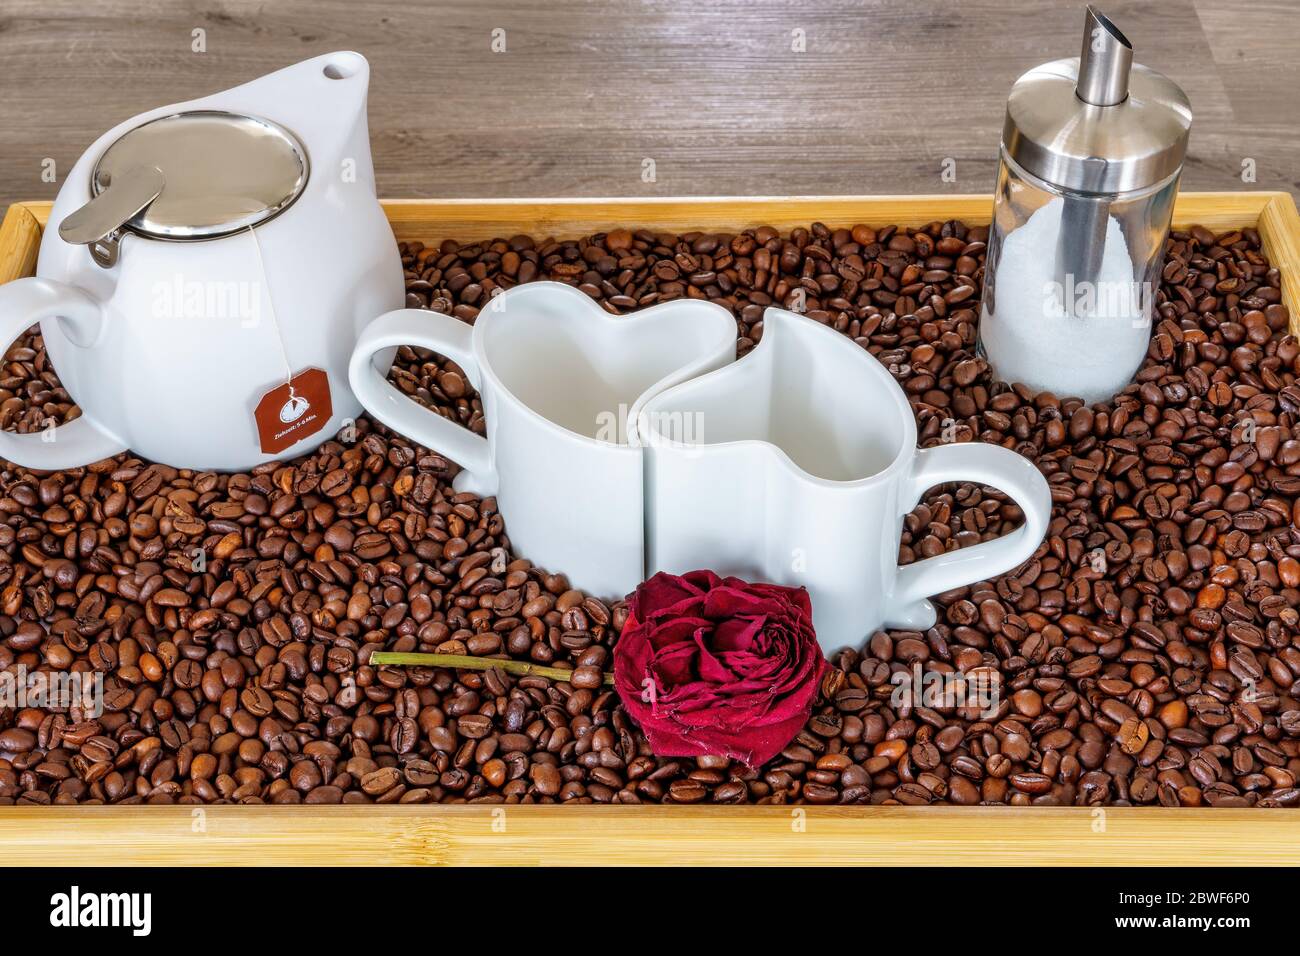 Eine Anordnung von Herztassen auf einem Tablett mit Kaffeebohnen  Stockfotografie - Alamy